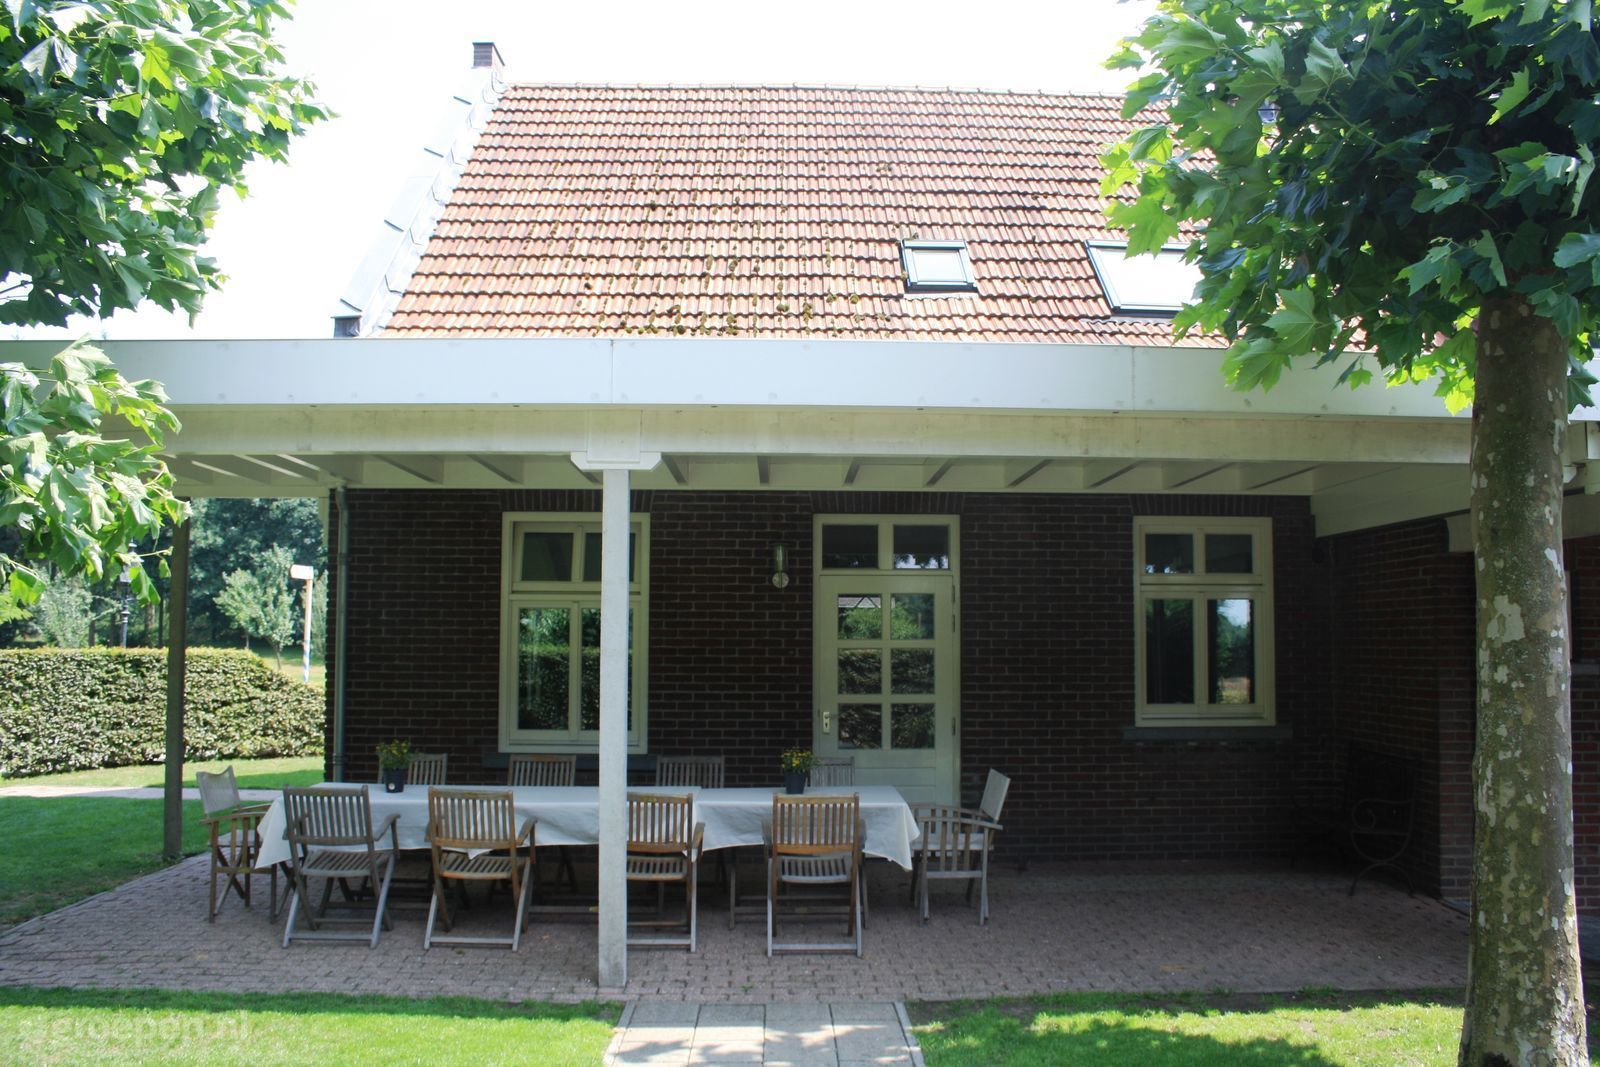 Group accommodation Maasbree